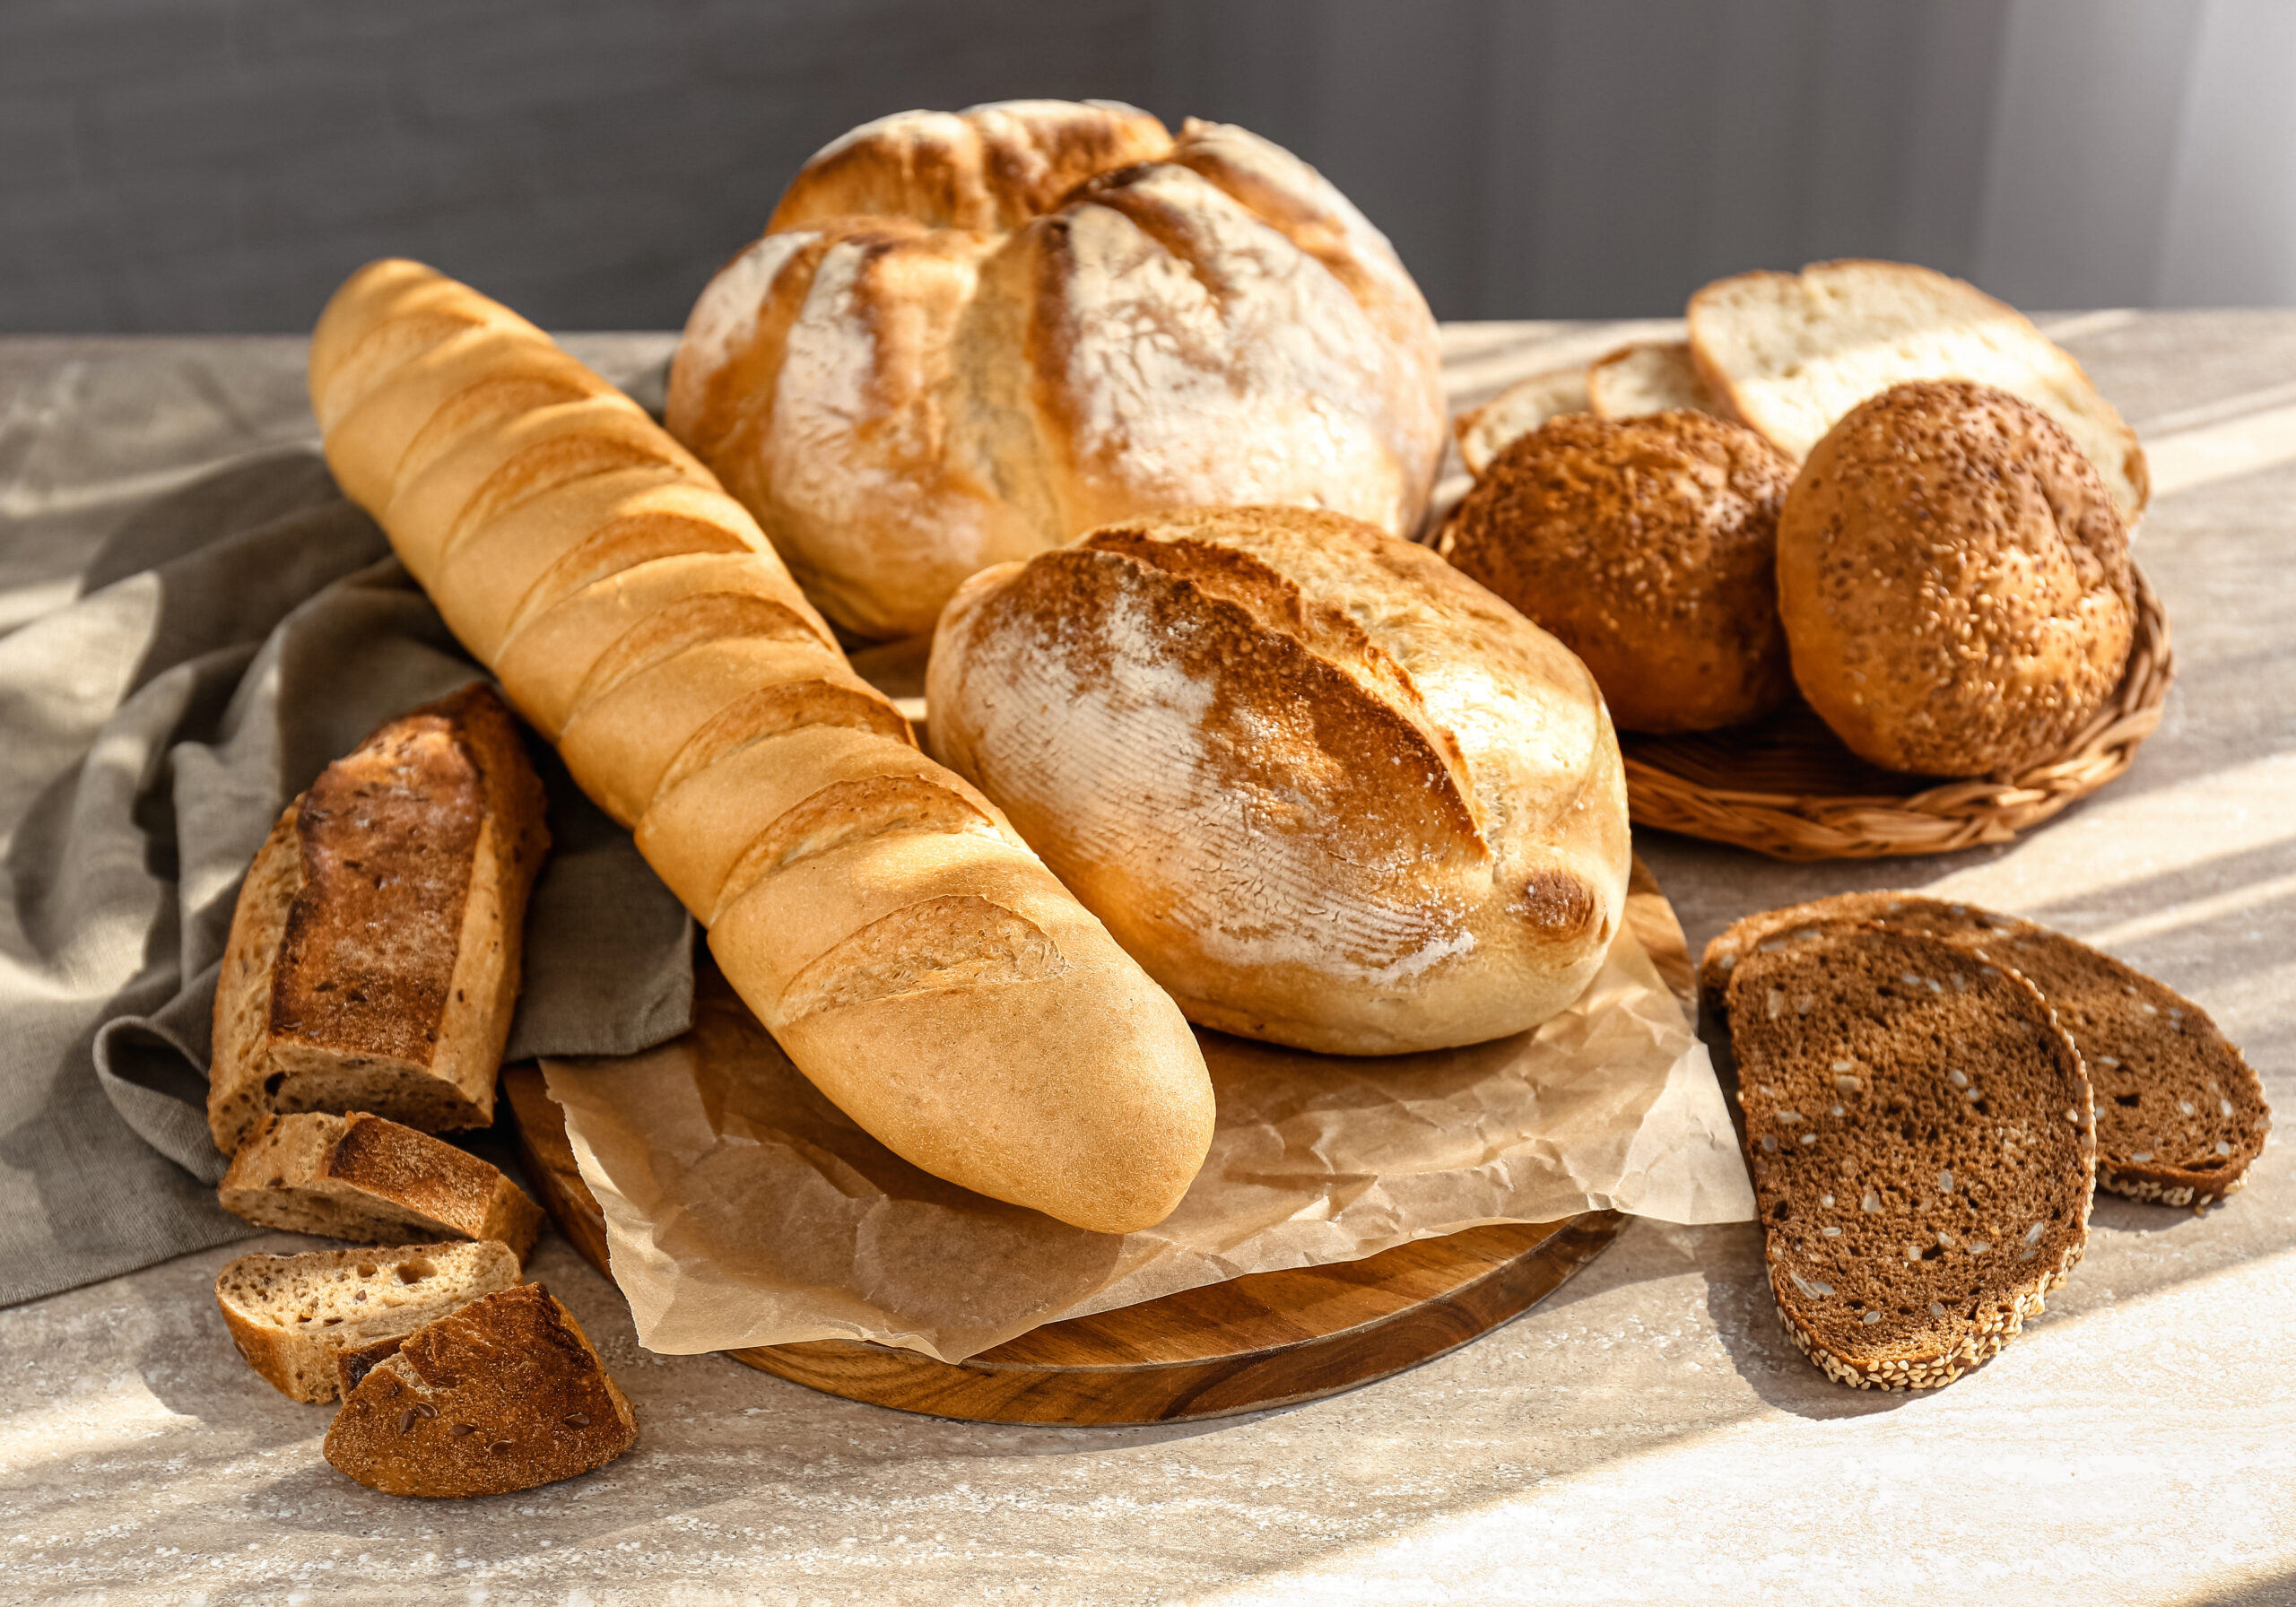 Conoscevi il vecchio trucco per mantenere il pane fresco? | No frigo